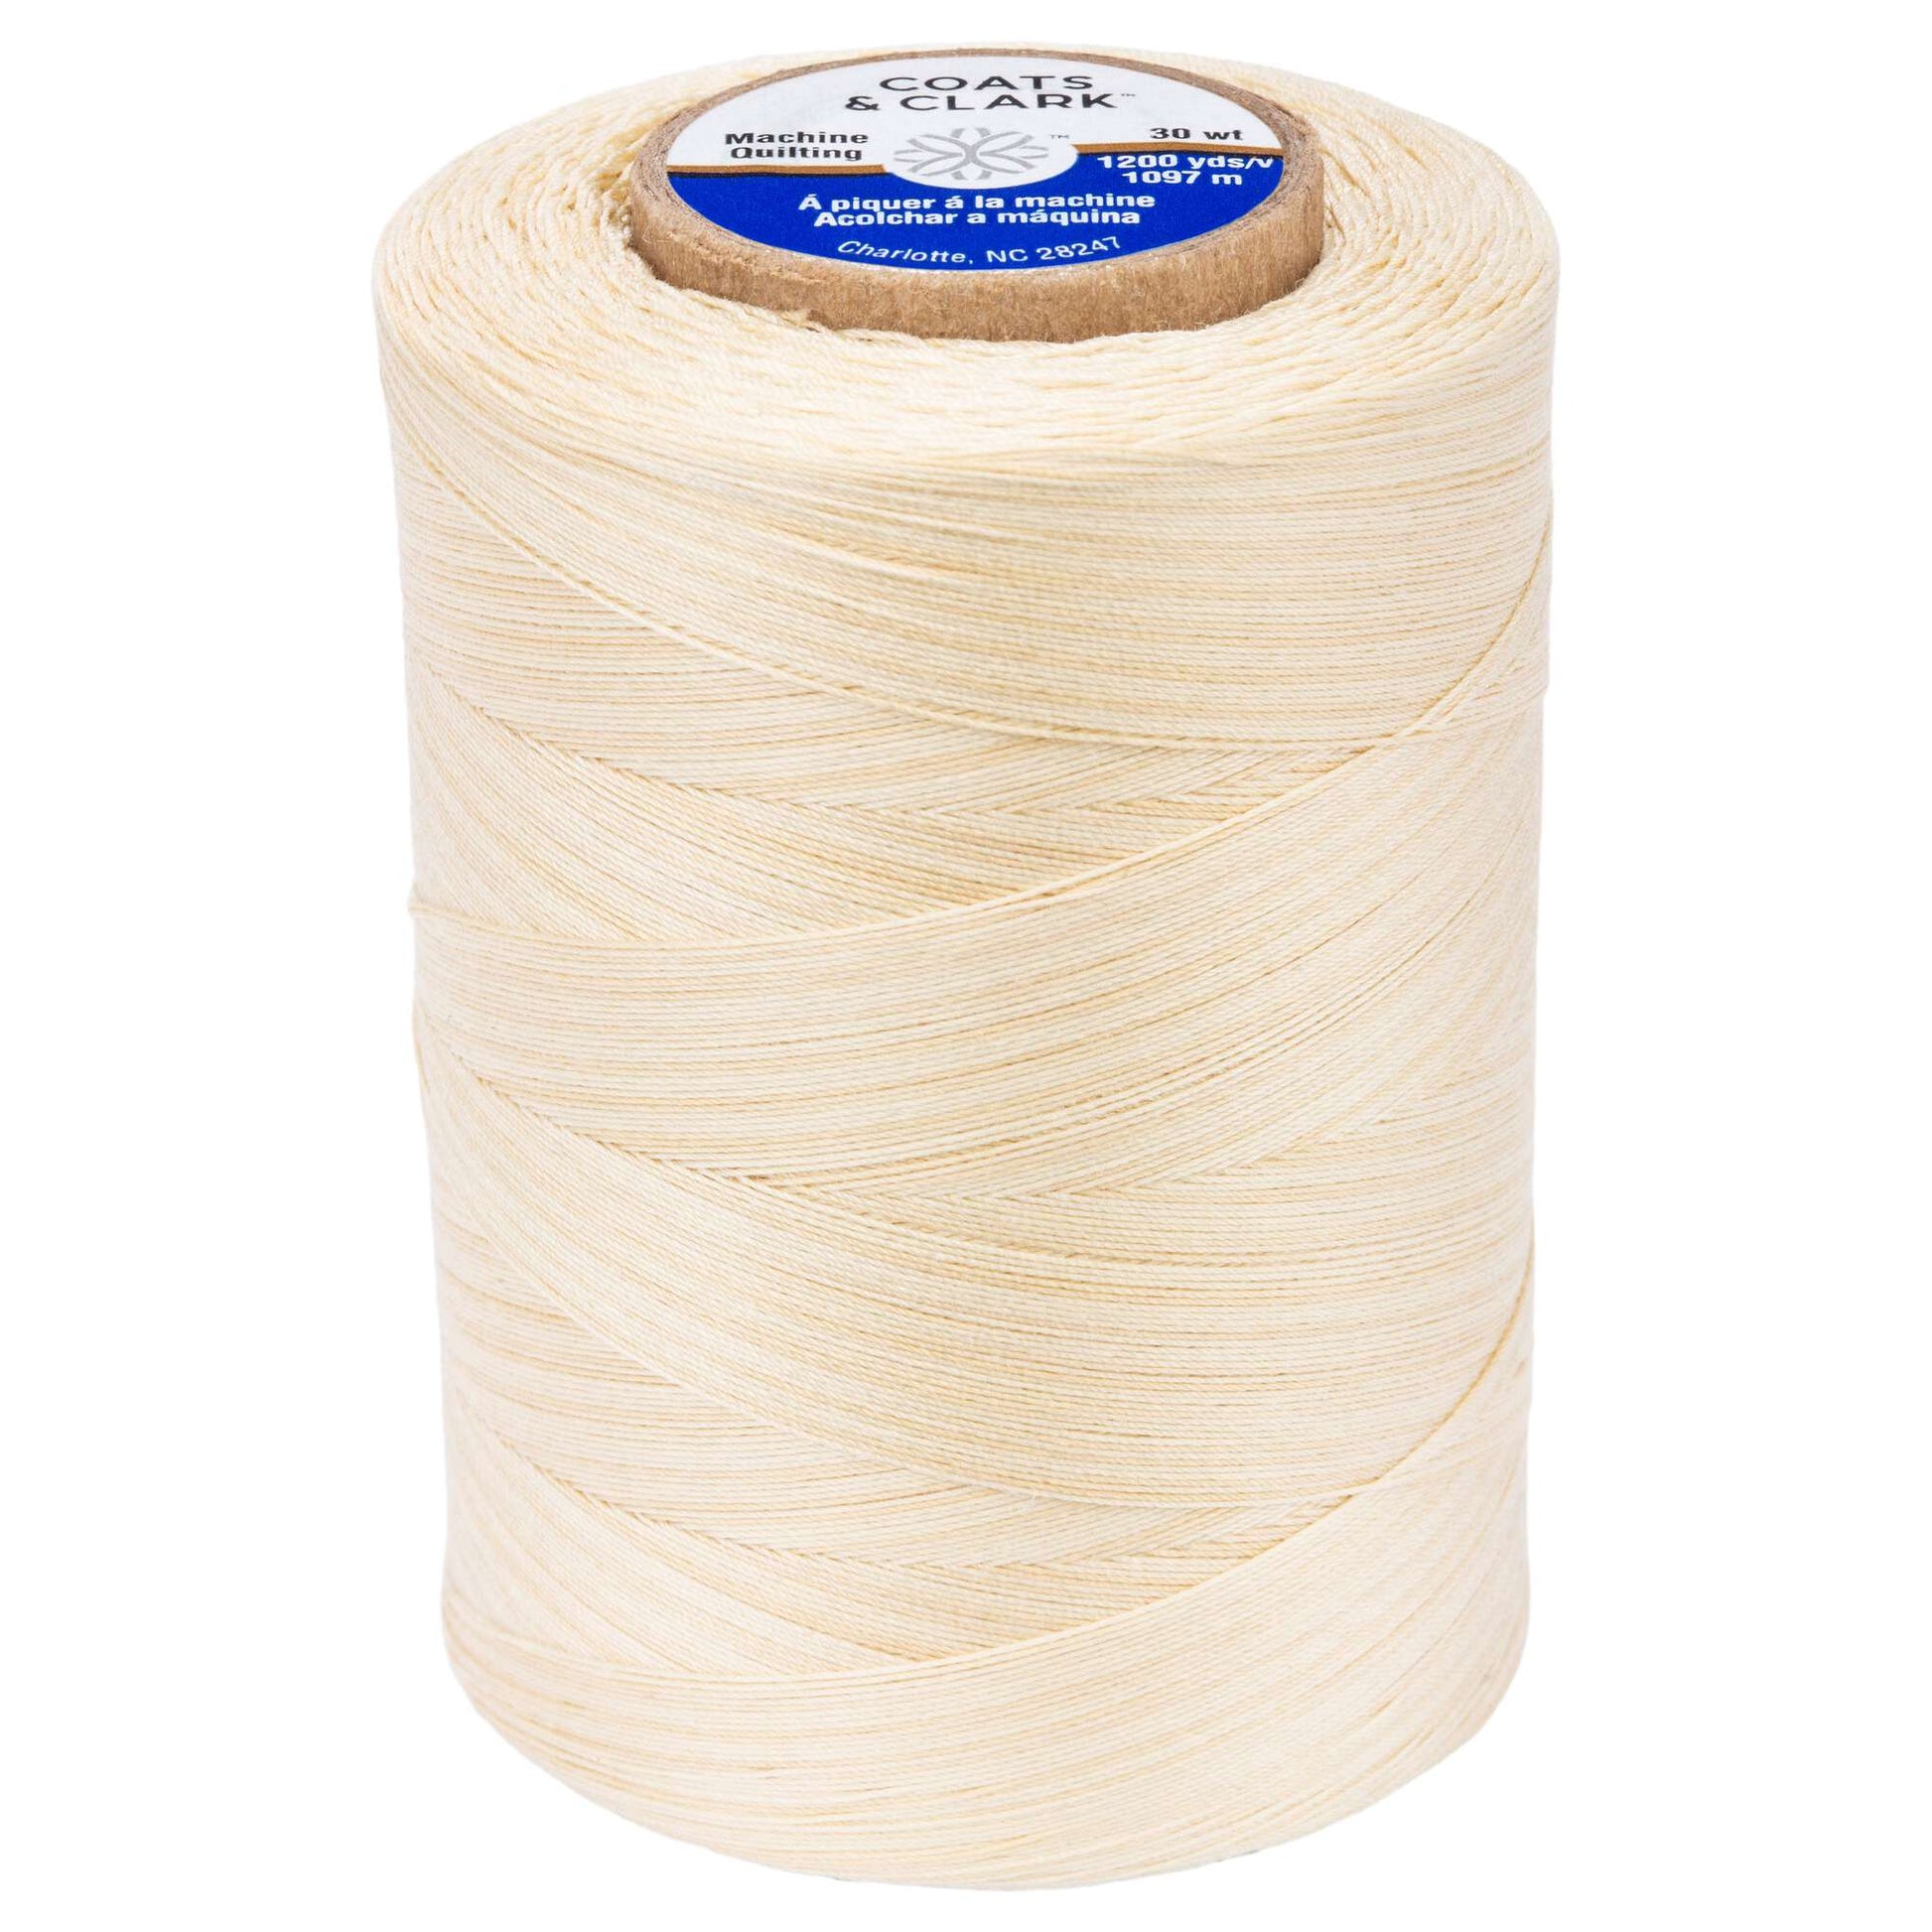 Coats & Clark Cotton Machine Quilting Multicolor Thread (1200 Yards) Vanilla Cream